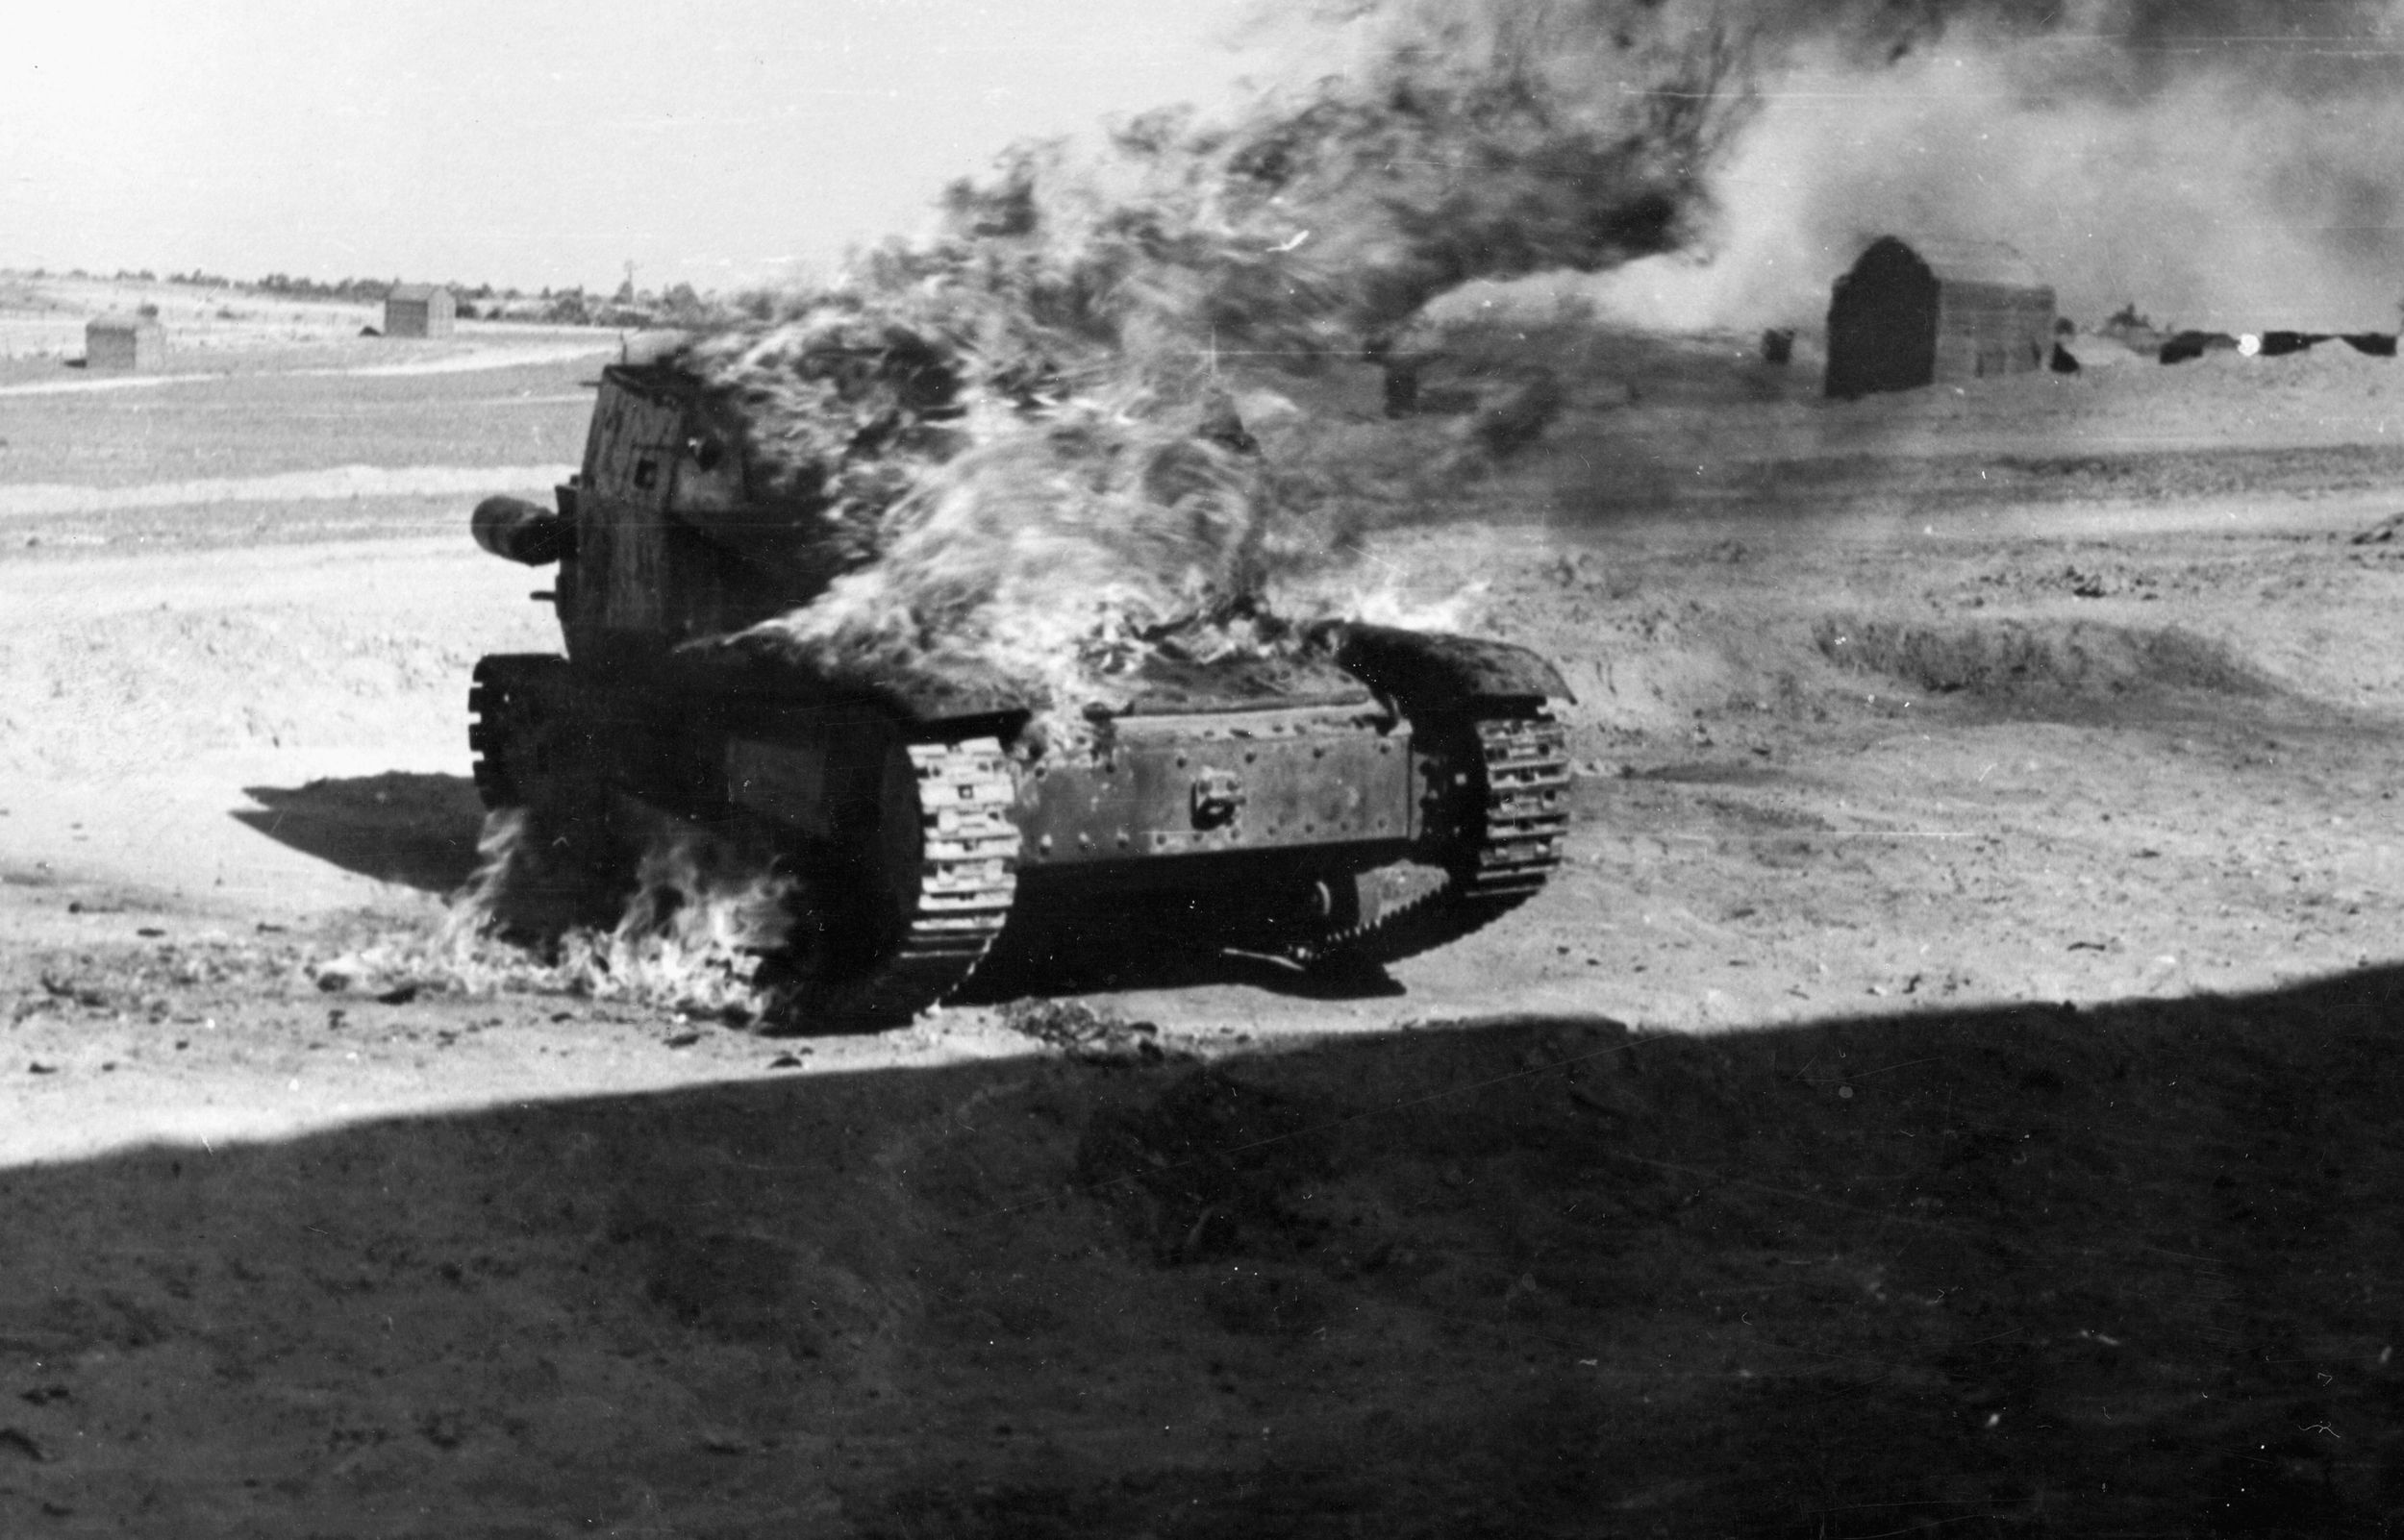 燃烧的德国坦克从阿拉曼战役标志着撤退的路线。决战的准备工作期间,英国陆军元帅蒙哥马利伯纳德确信他有数量上的优势。